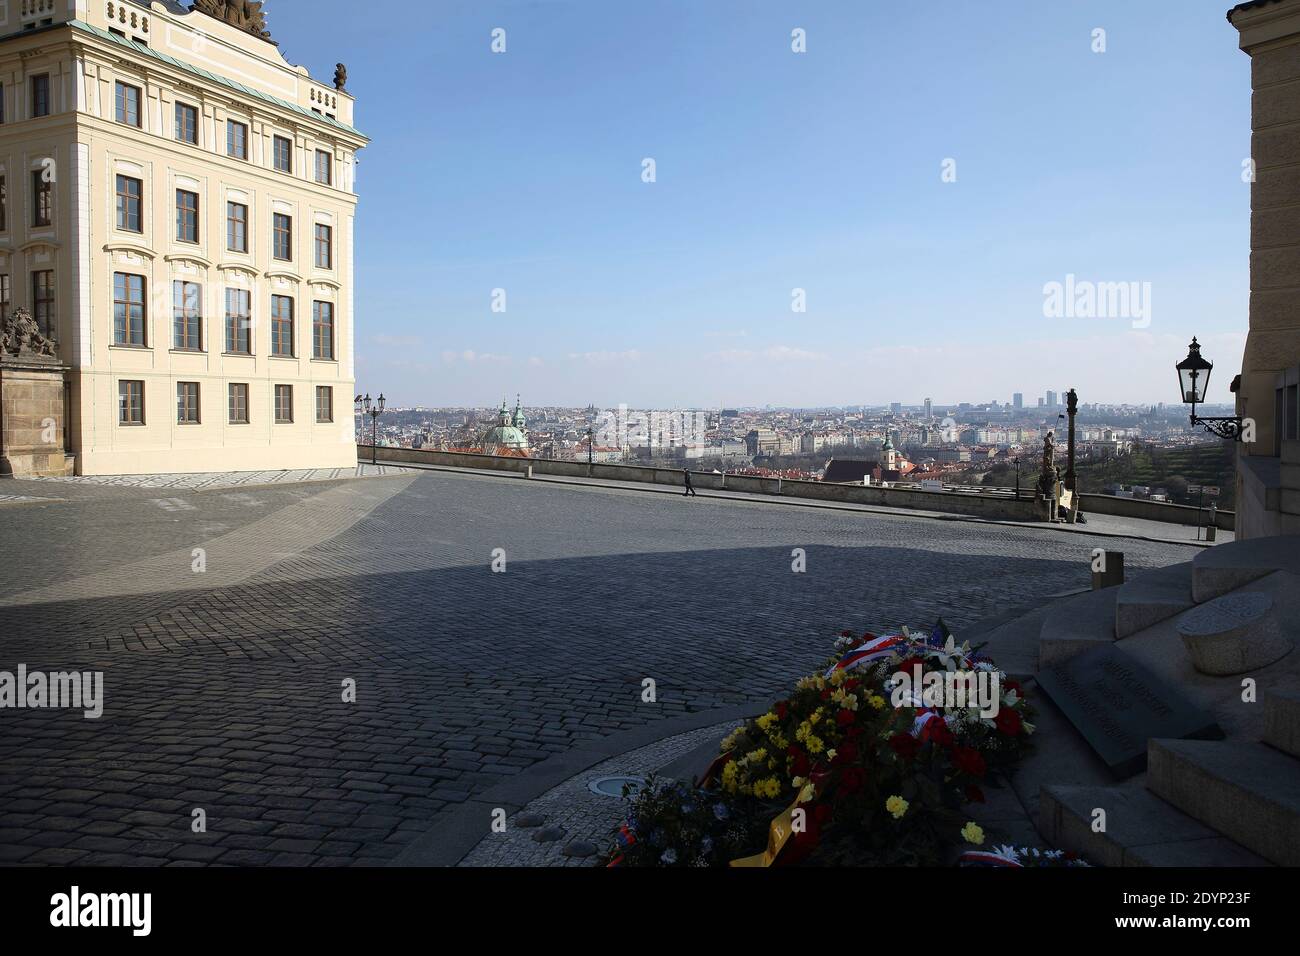 Pohled na panorama Prahy z Hradčanského náměstí přes věnce u sochy T.G.M. Foto Stock